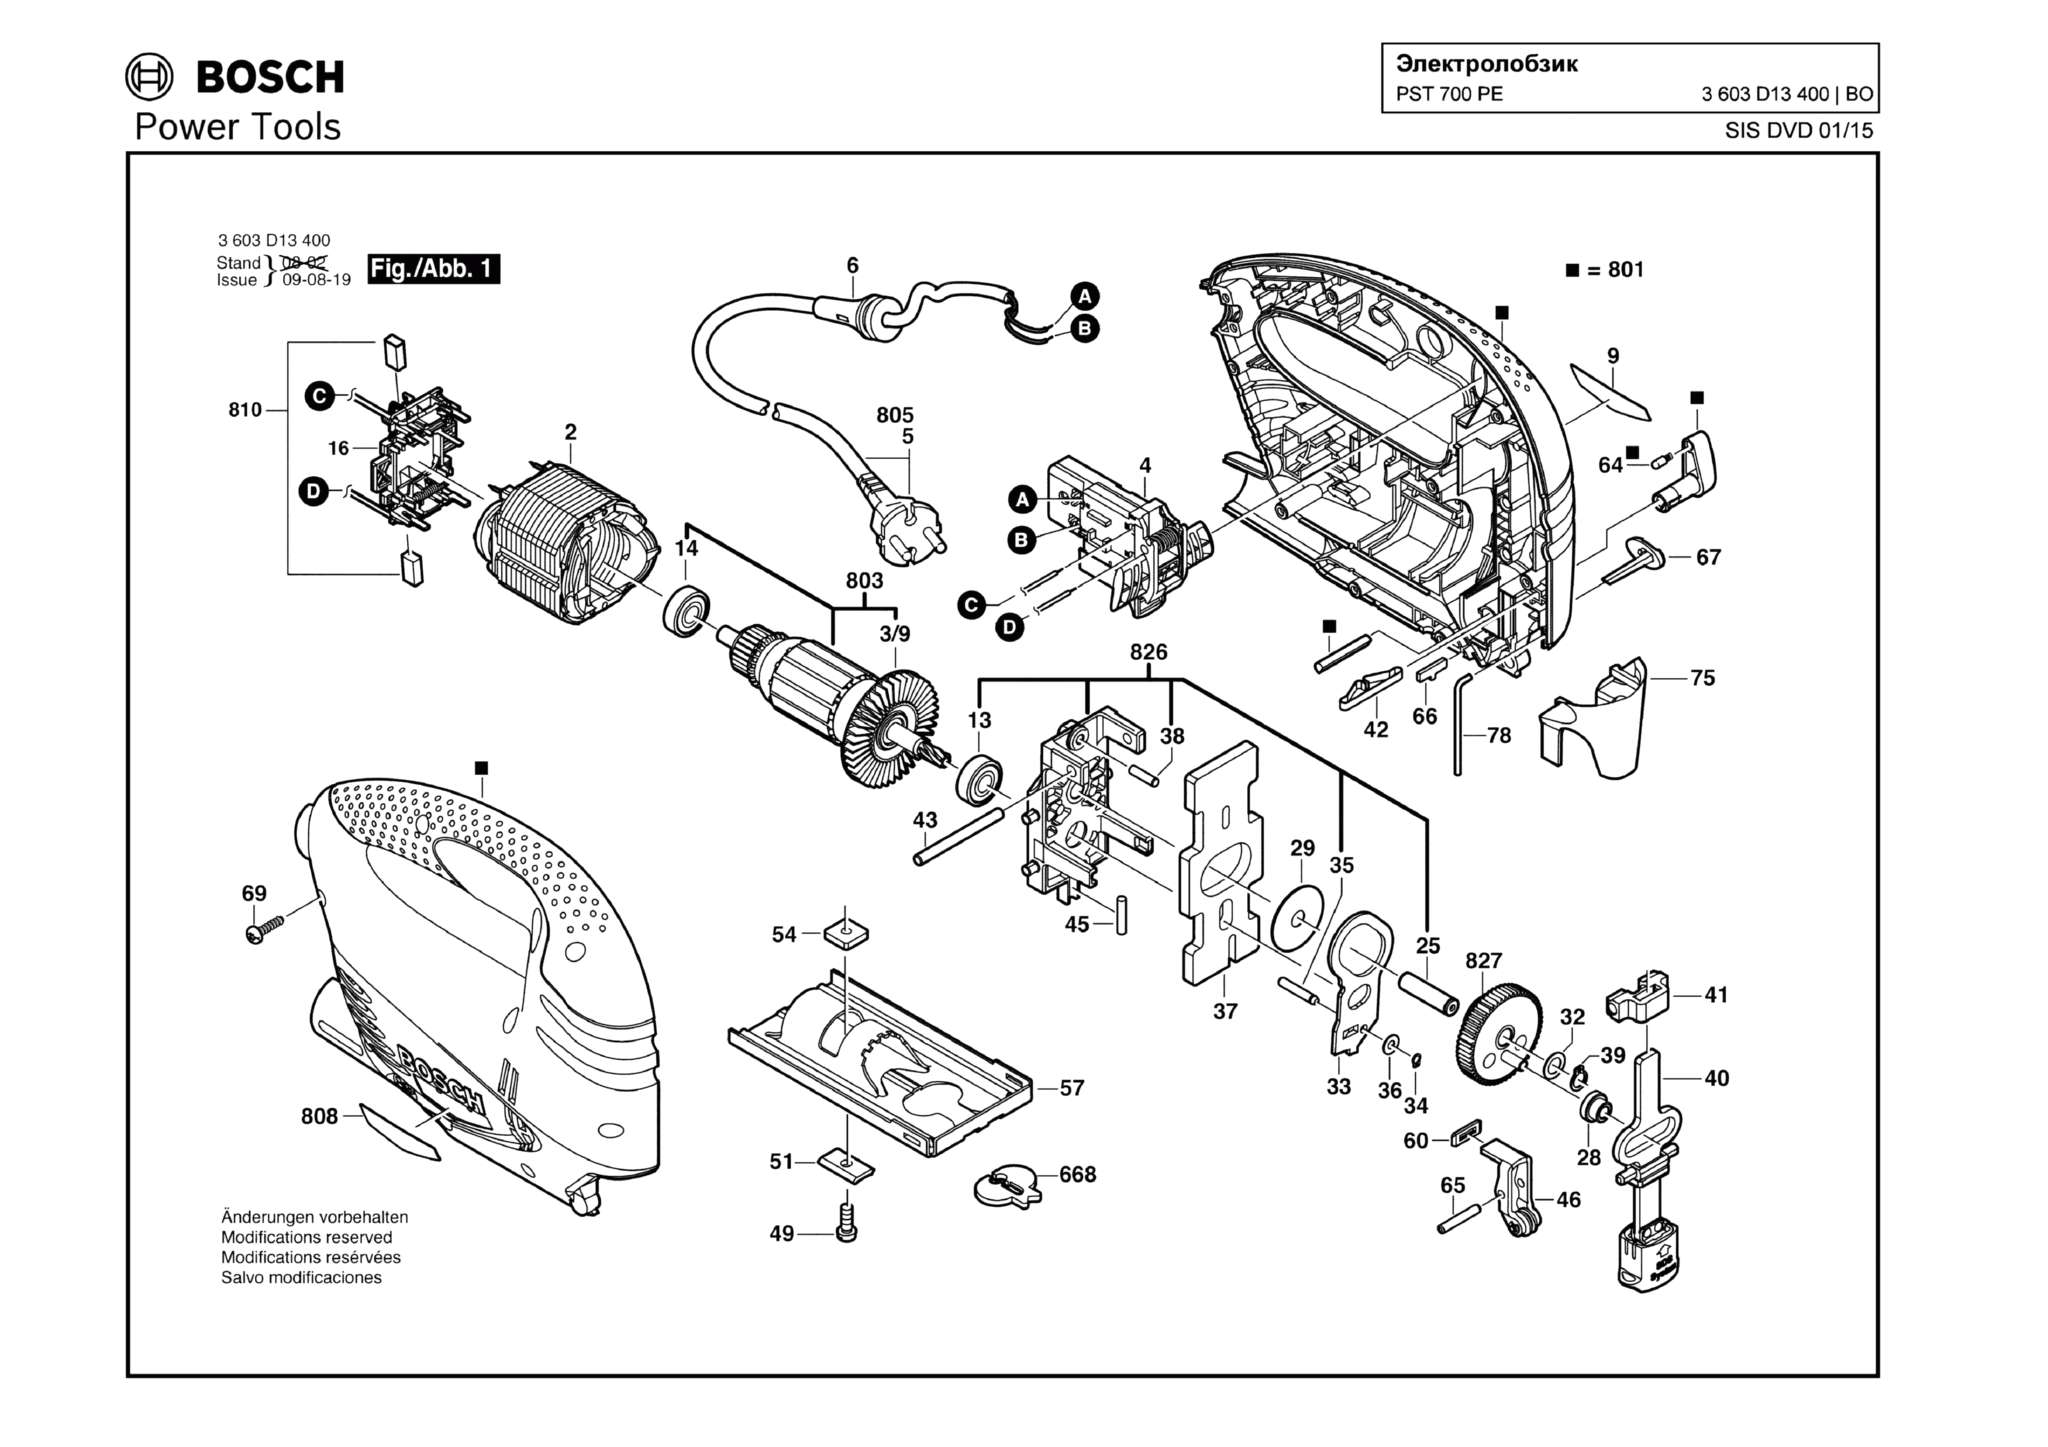 Запчасти, схема и деталировка Bosch PST 700 PE (ТИП 3603D13400)